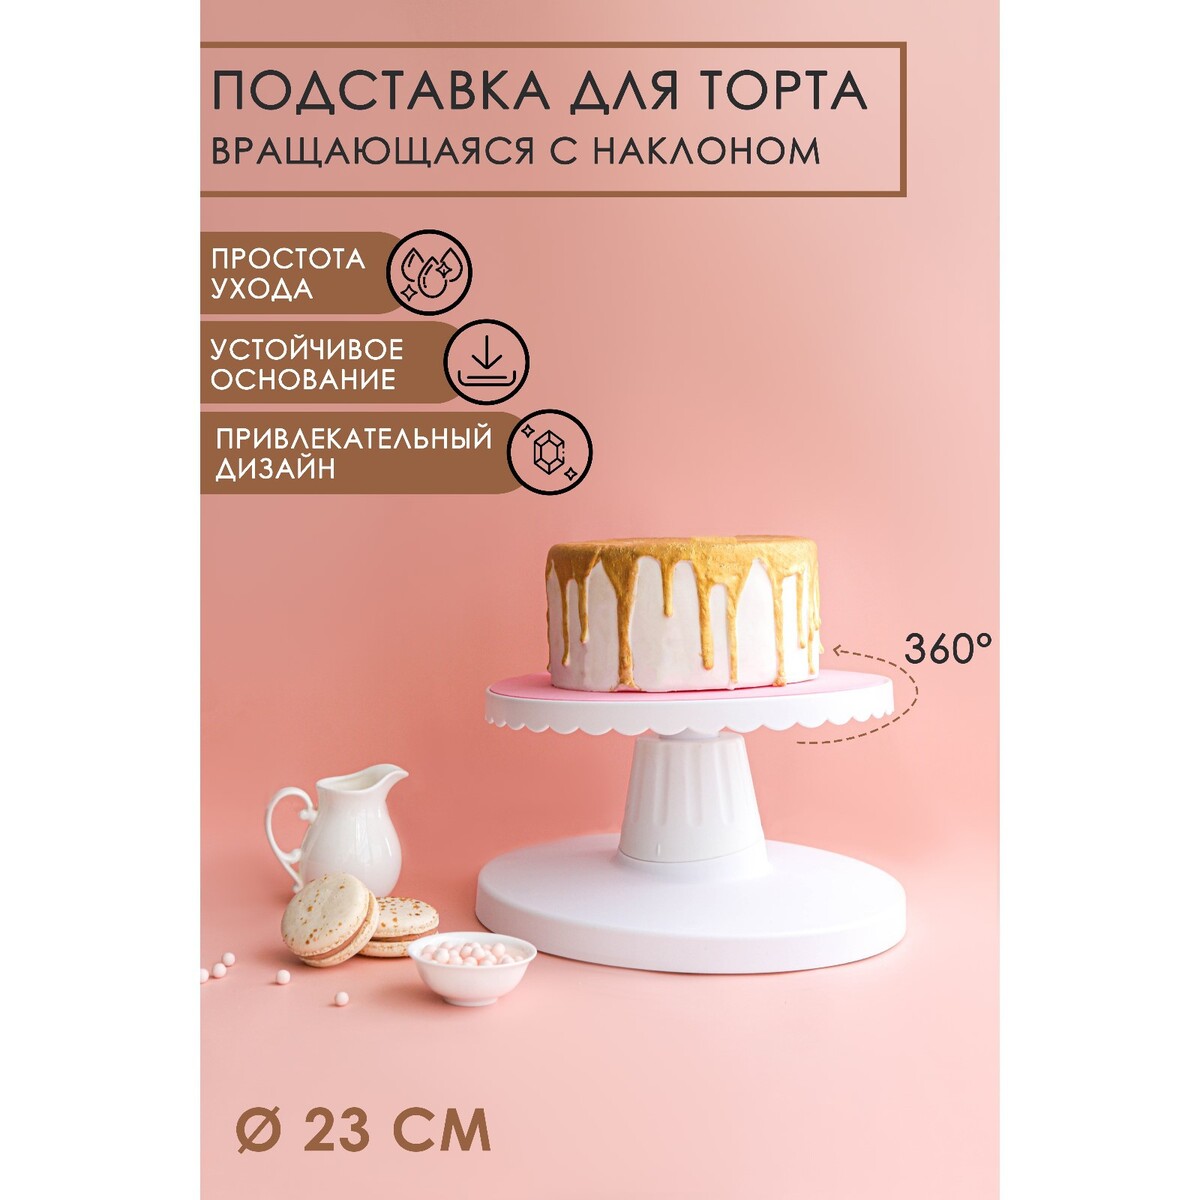 Подставка для торта вращающаяся с наклоном, d=23 см подставка для торта круглая